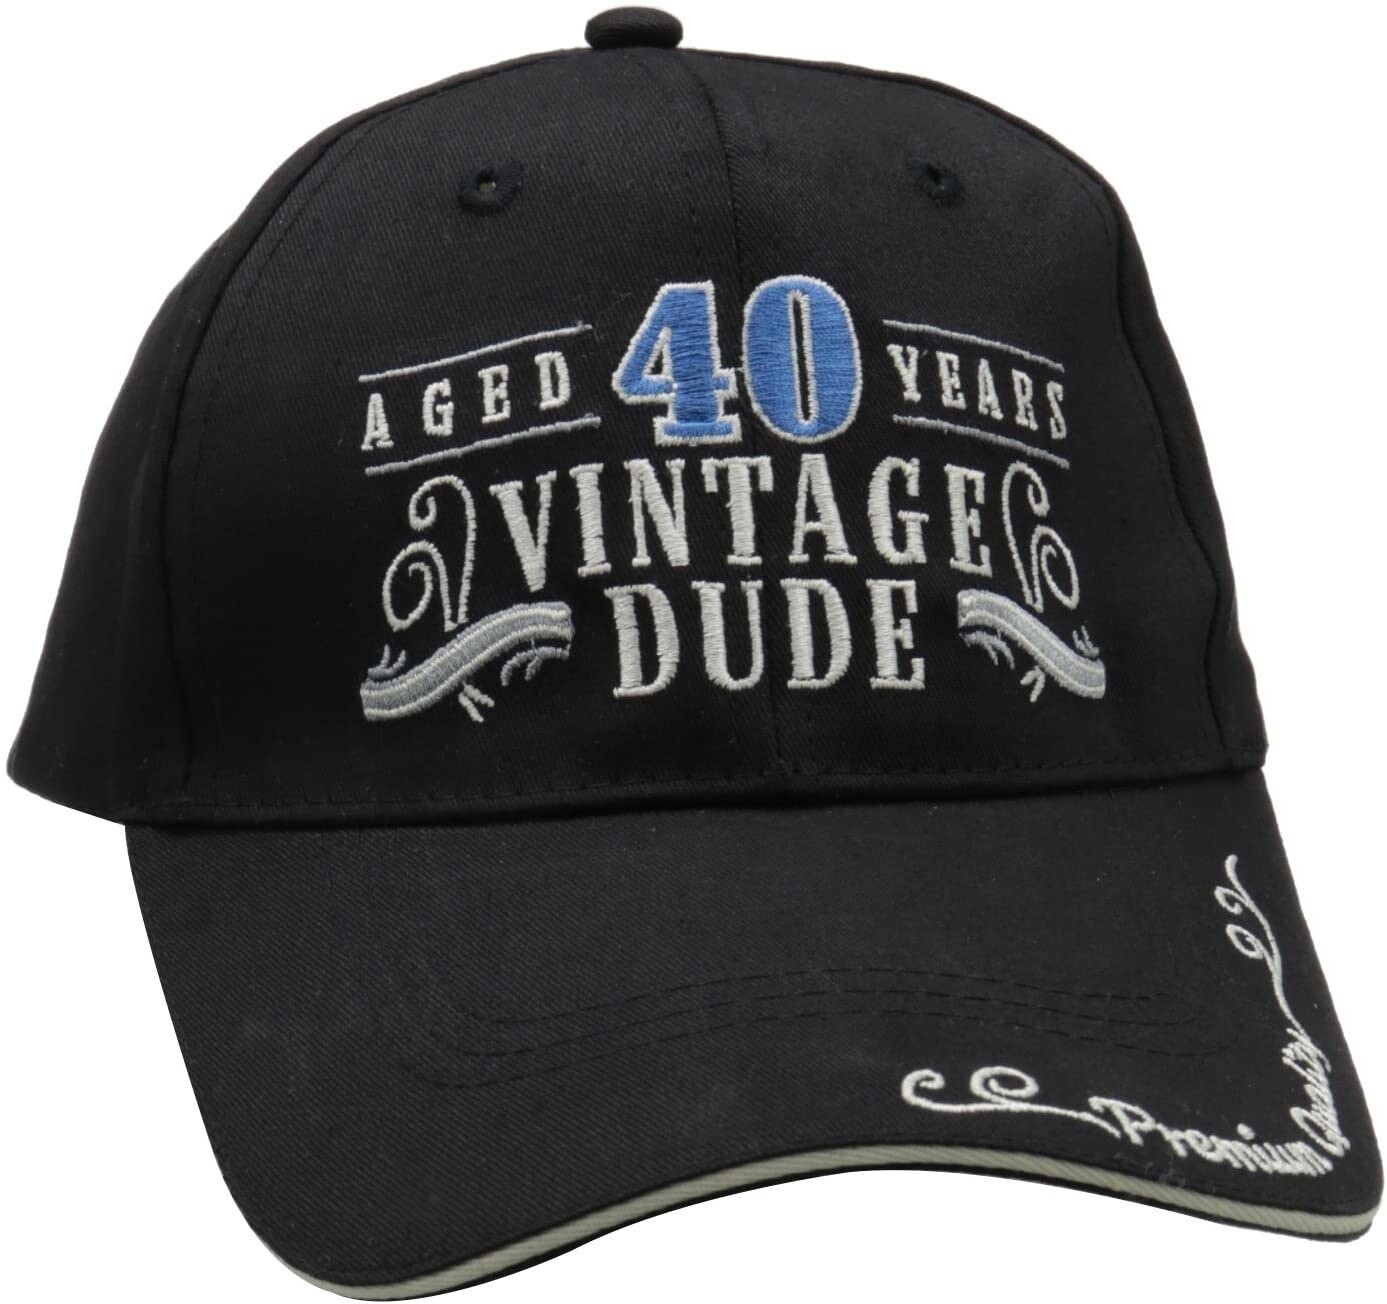 Cap-Vintage dude 40th Birthday